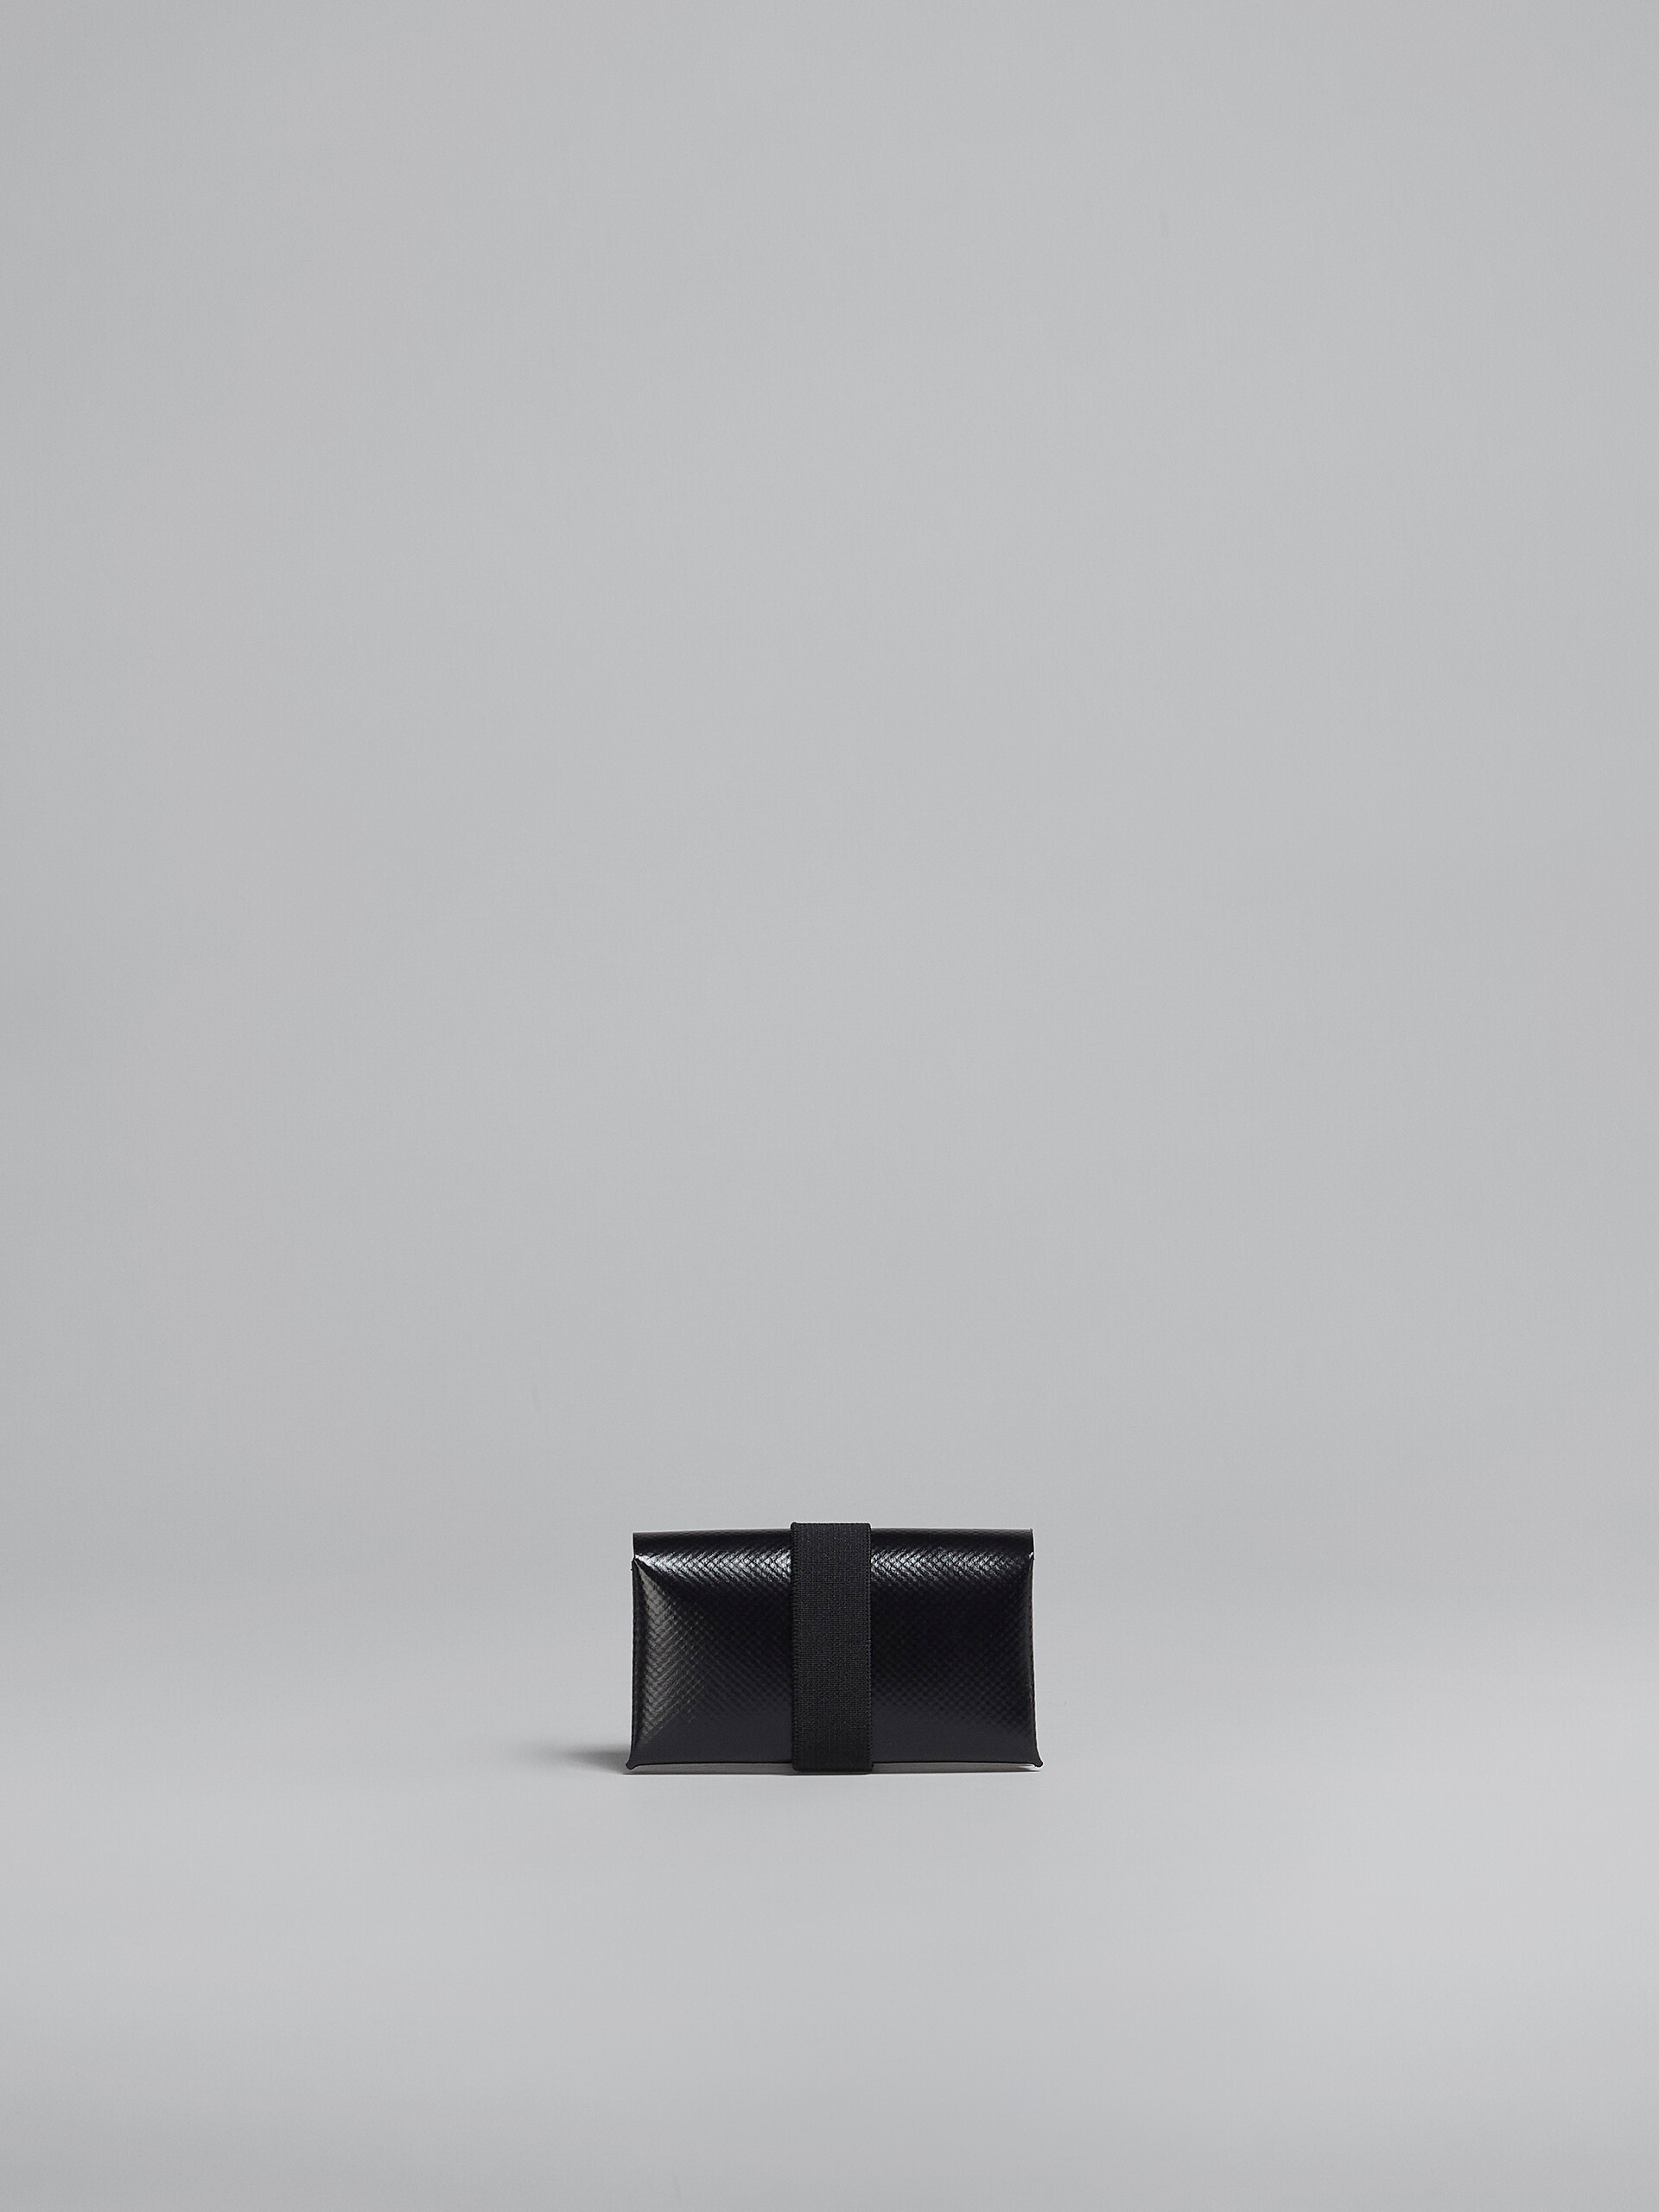 Dreifache Faltbrieftasche in Schwarz - Brieftaschen - Image 3